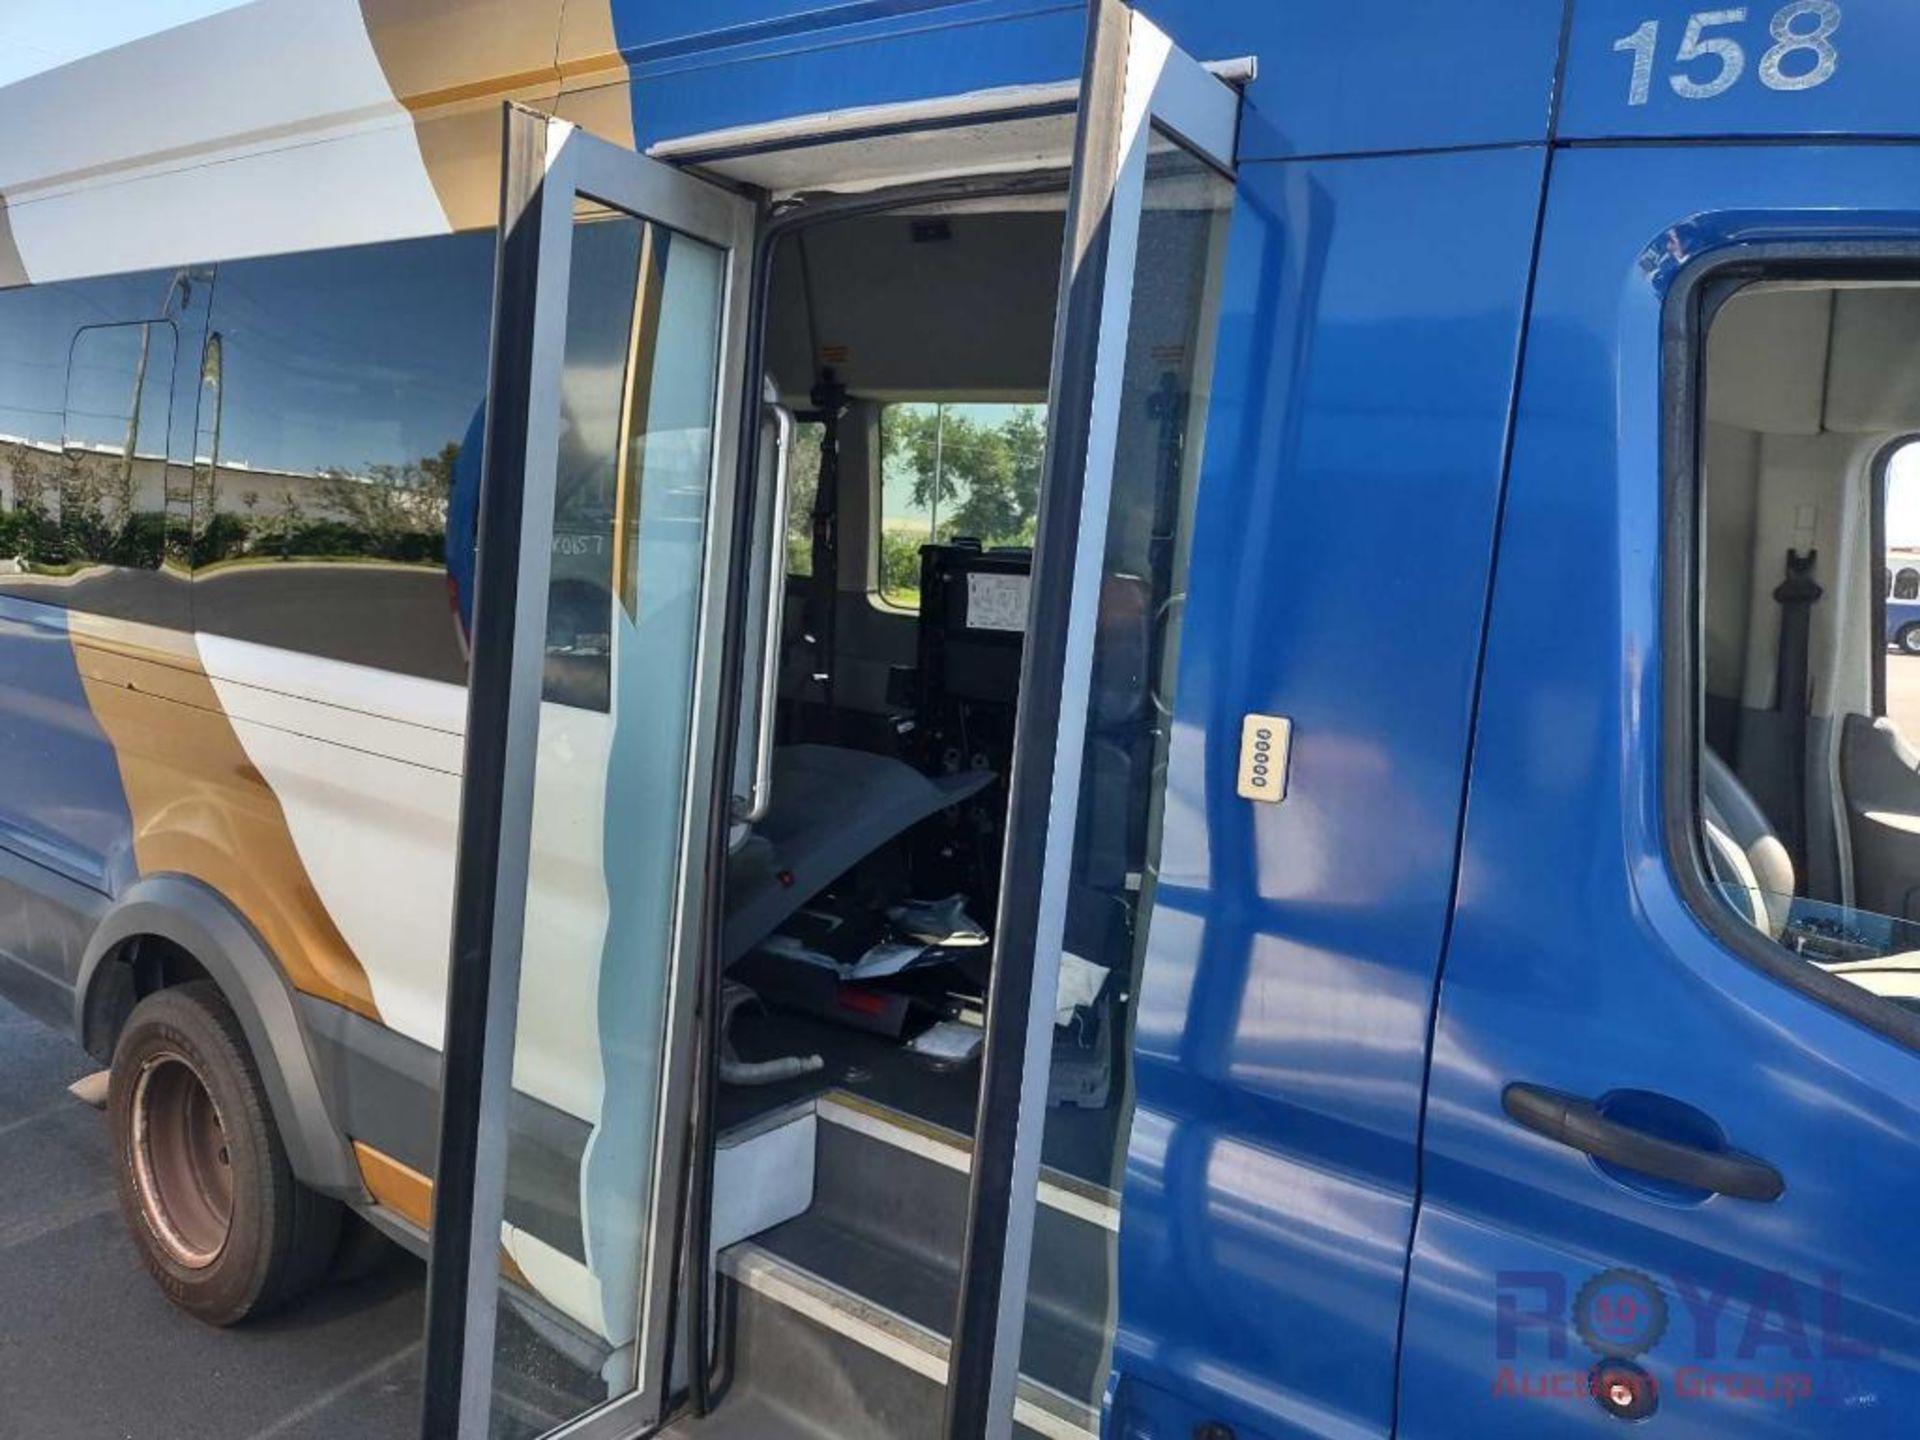 2017 Ford Transit Wagon Passenger Van - Image 9 of 29